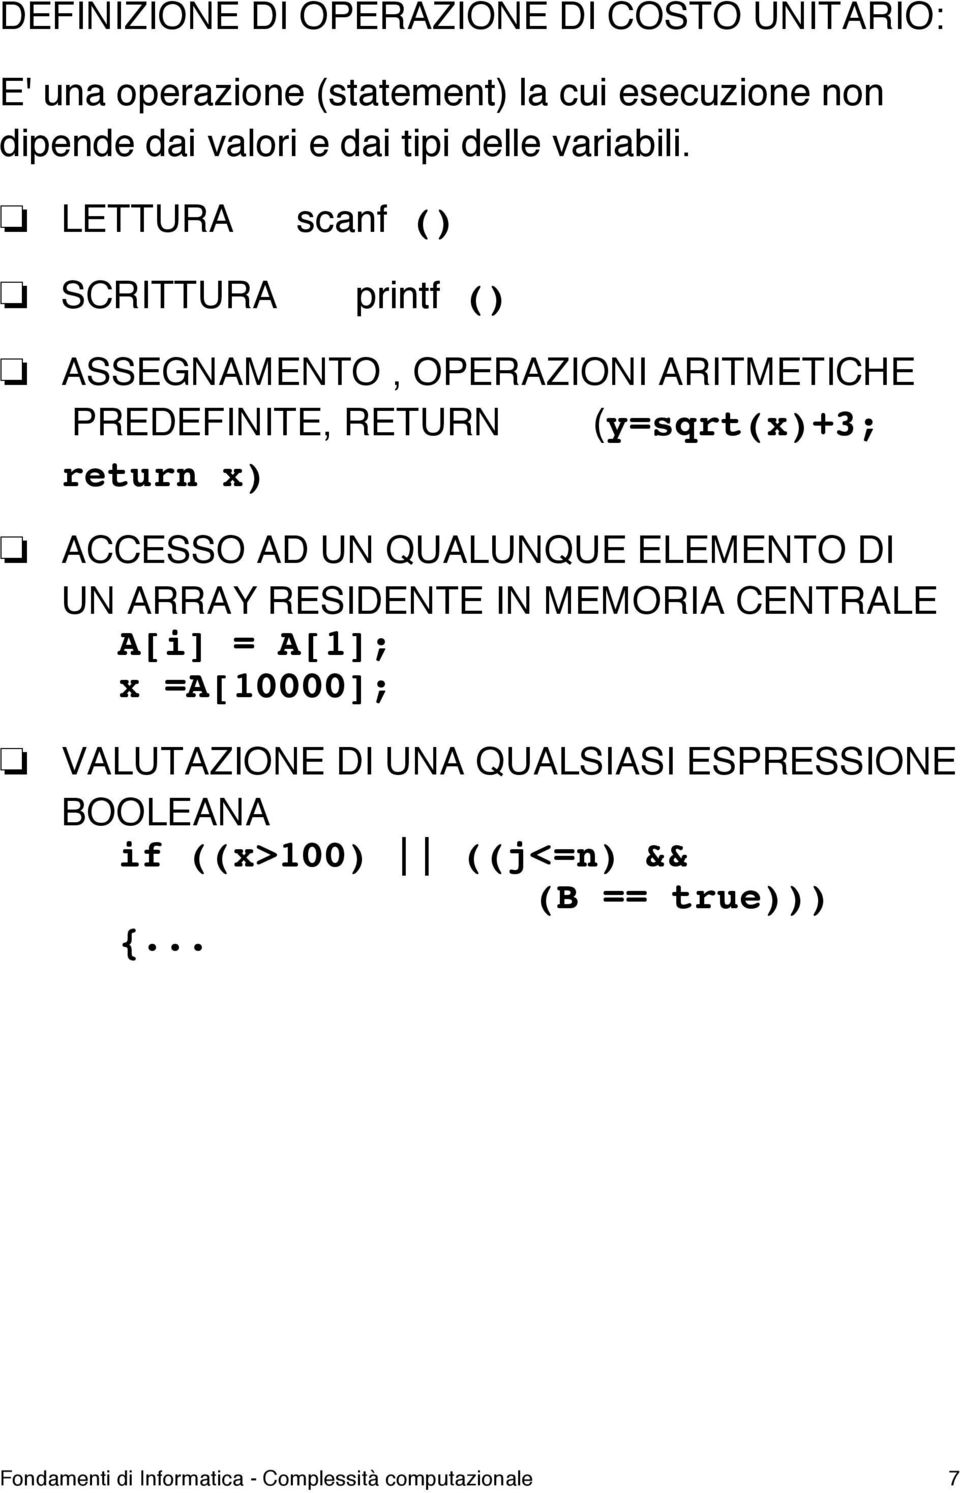 LETTURA scanf () SCRITTURA printf () ASSEGNAMENTO, OPERAZIONI ARITMETICHE PREDEFINITE, RETURN (y=sqrt(x)+3; return x) ACCESSO